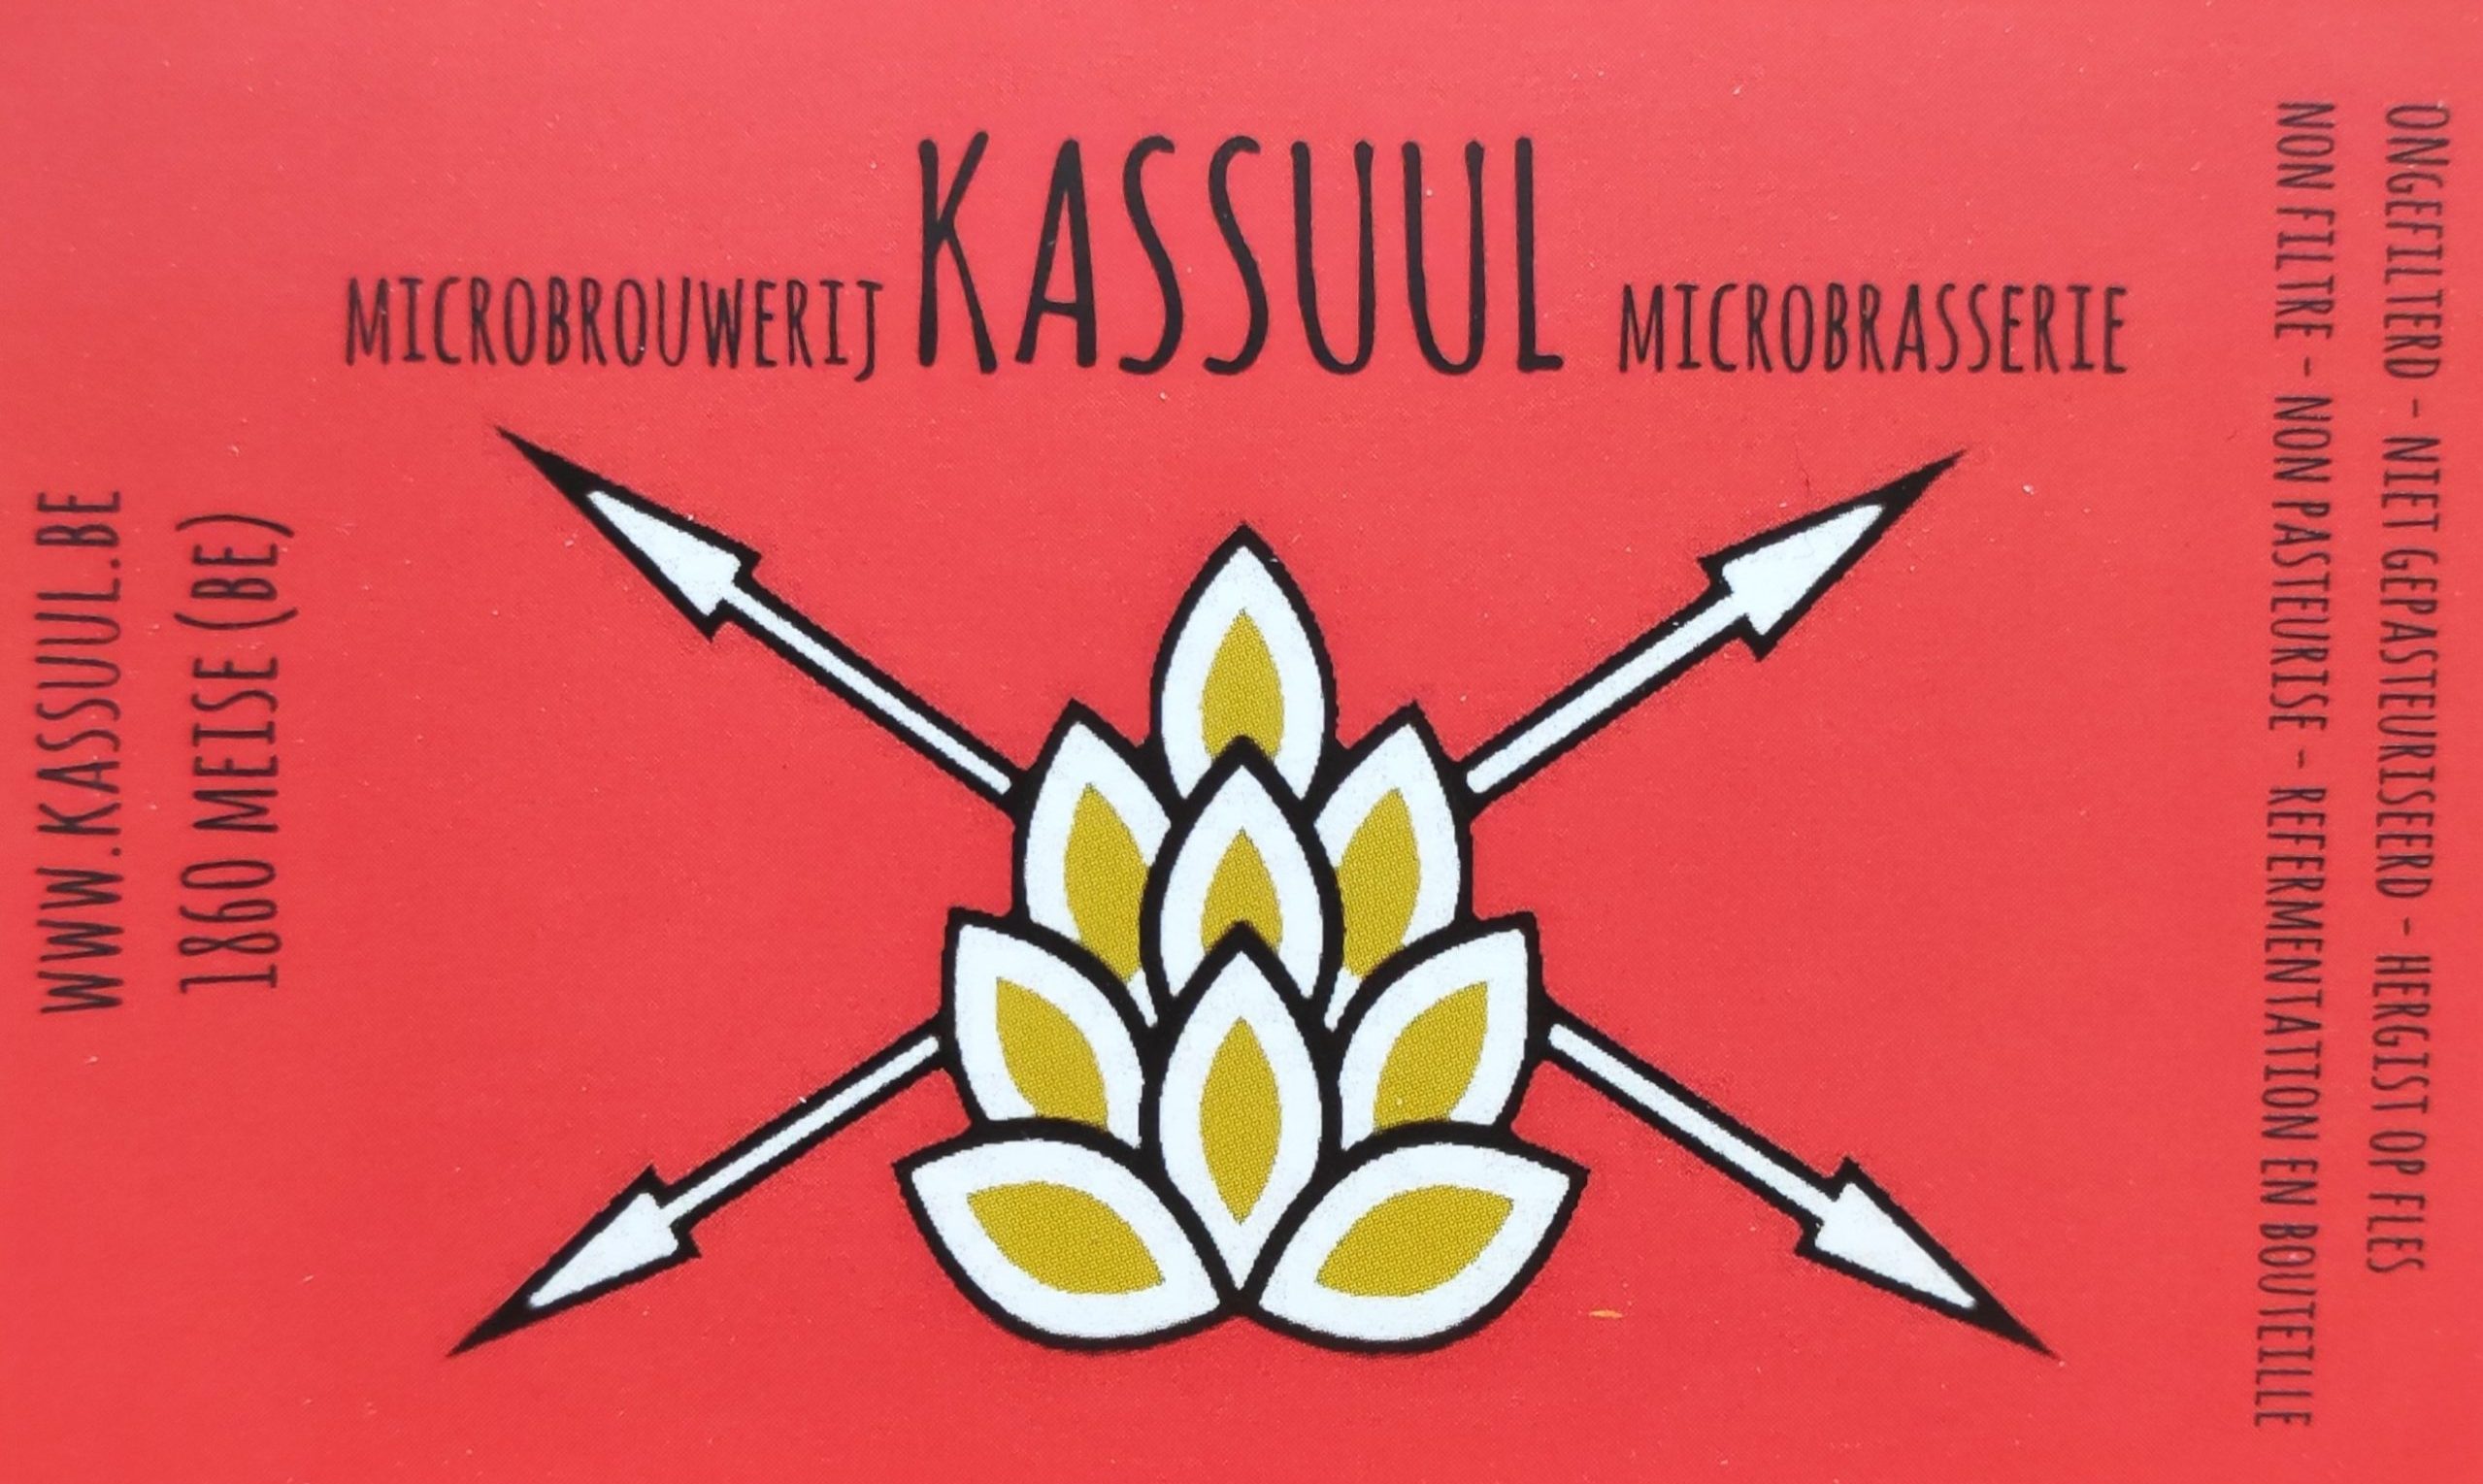 Kassuul